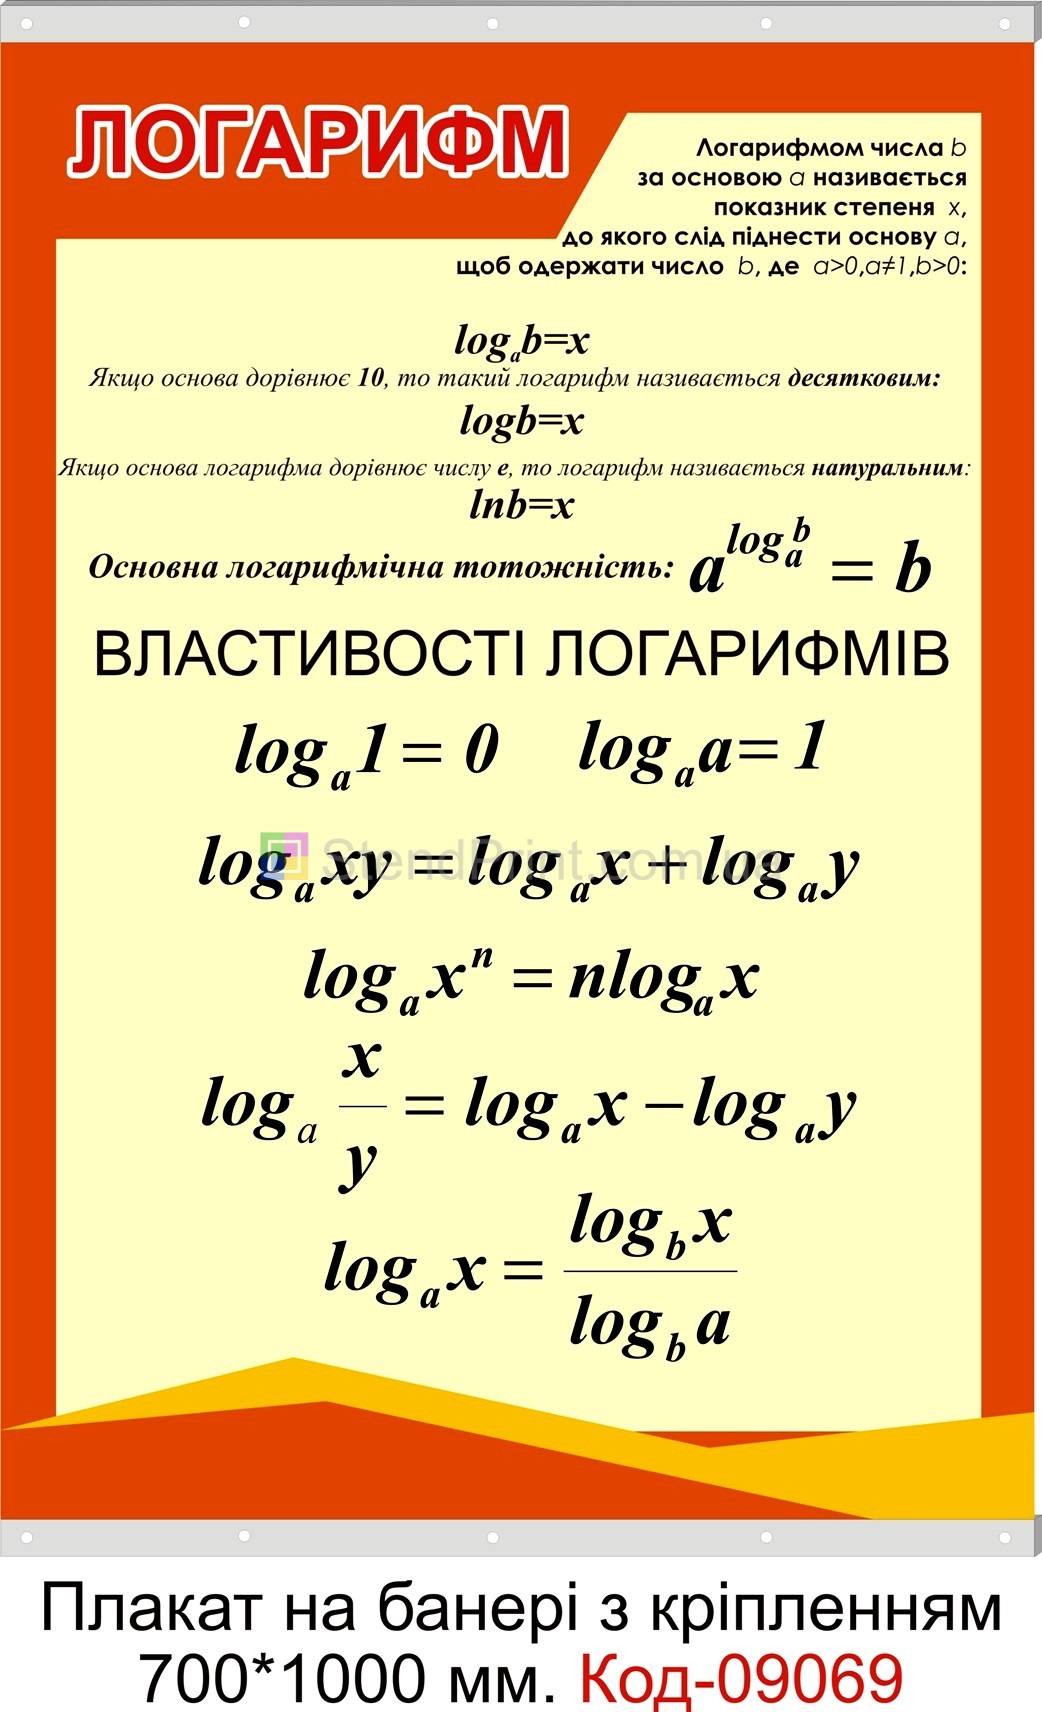 Плакат на банері з направляючими "Логарифм"